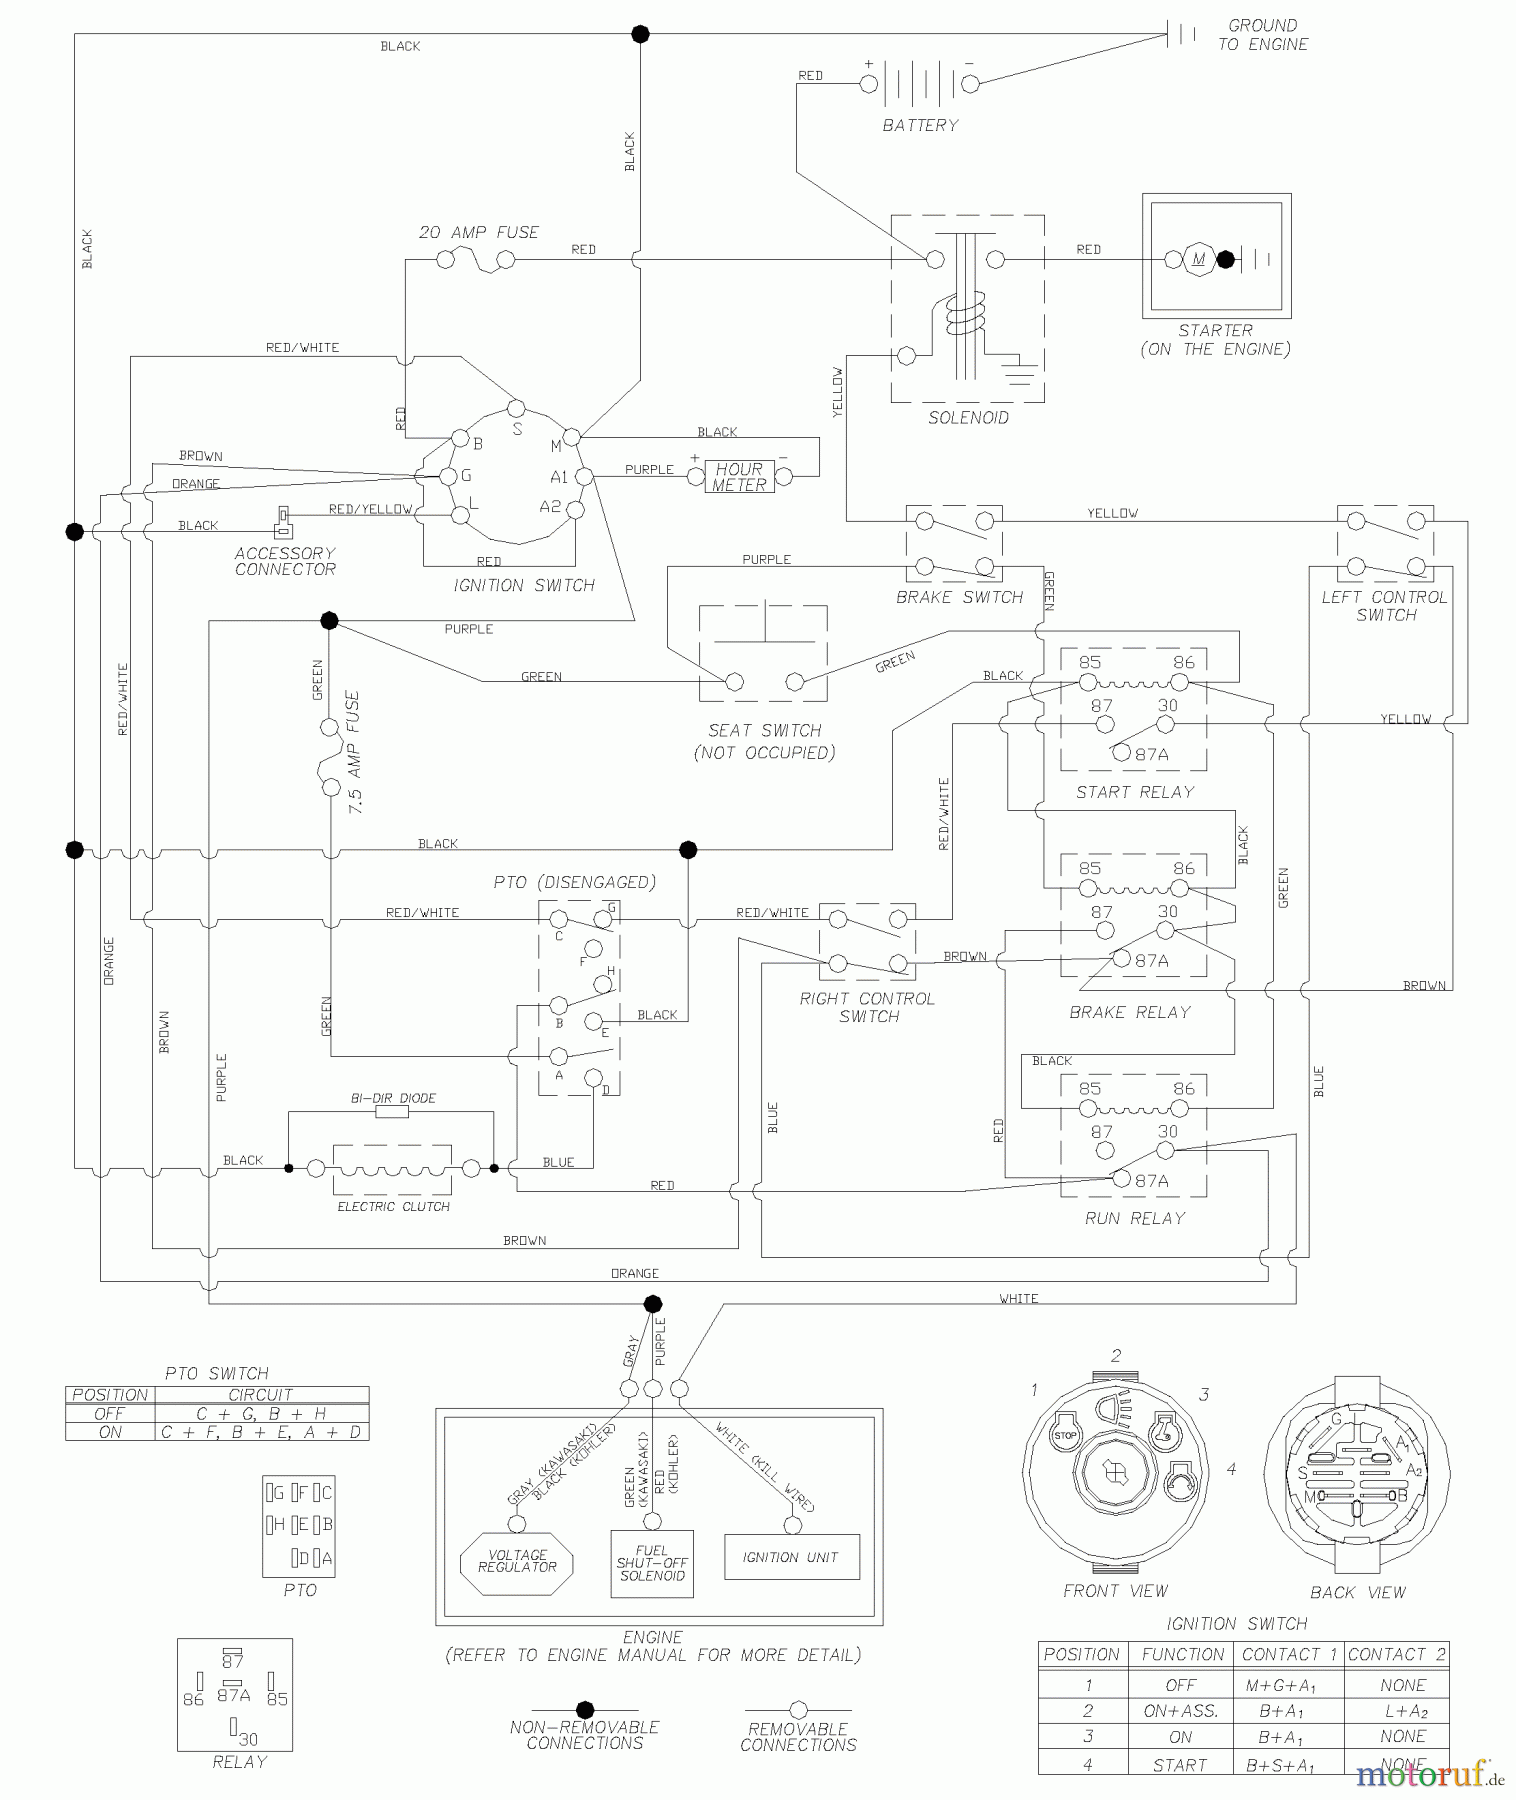  Husqvarna Nullwendekreismäher, Zero-Turn CZ 4815 (968999219) - Husqvarna KAA Zero-Turn Mower (2002-11 & After) Wiring Schematic